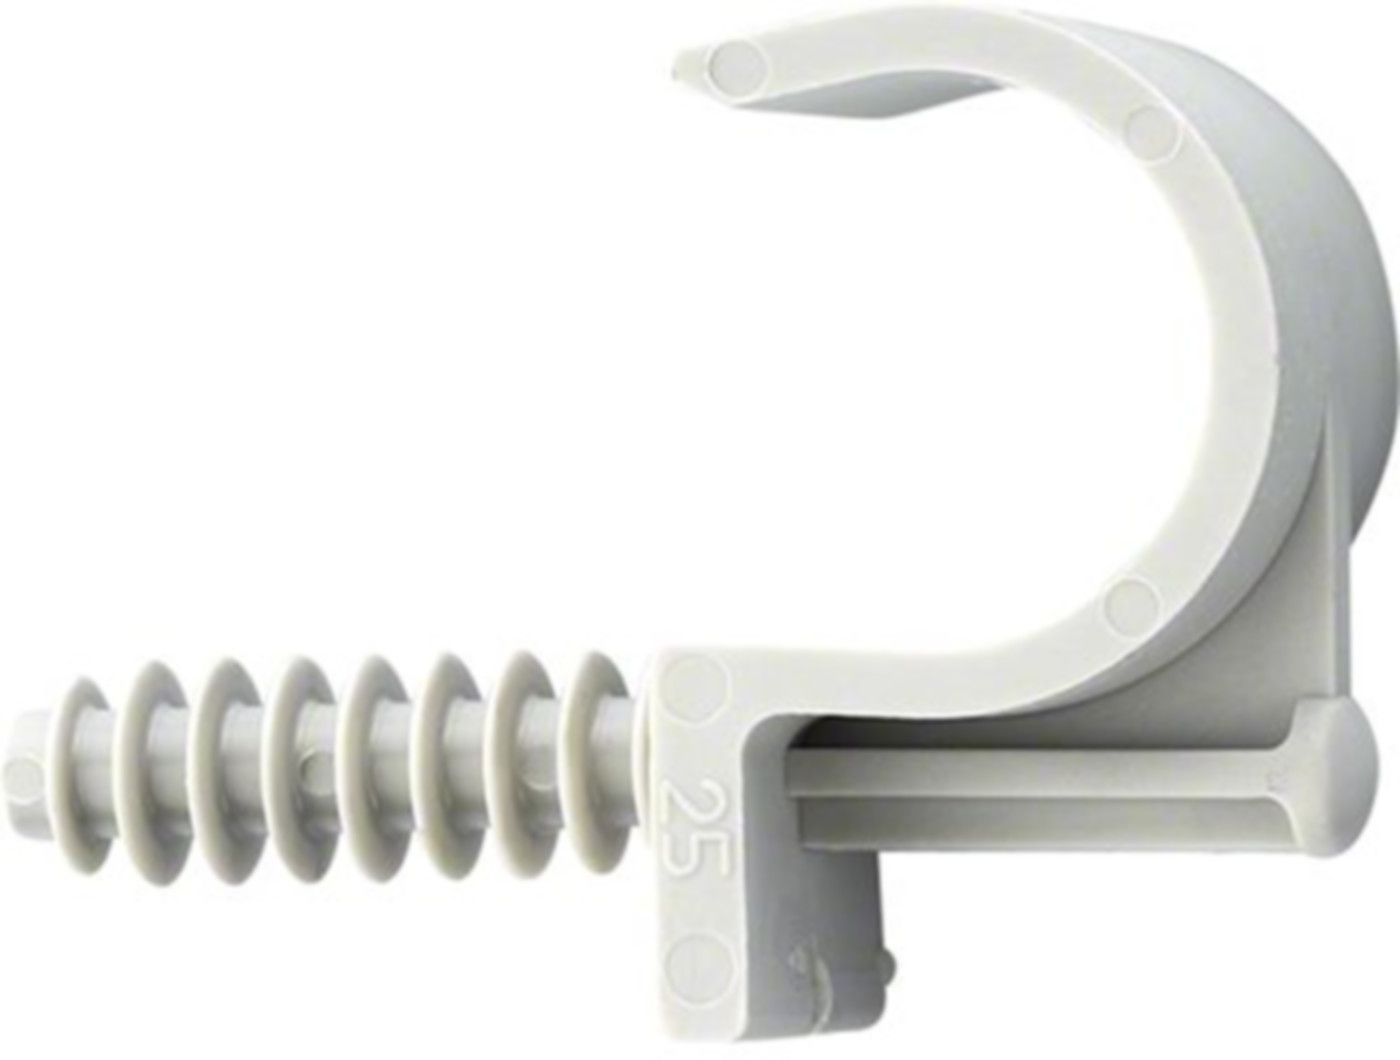 Kunststoff-Briden grau einfach FIX-RING 16mm A 94.151 - Rohrschellen/Briden aus Kunststoff